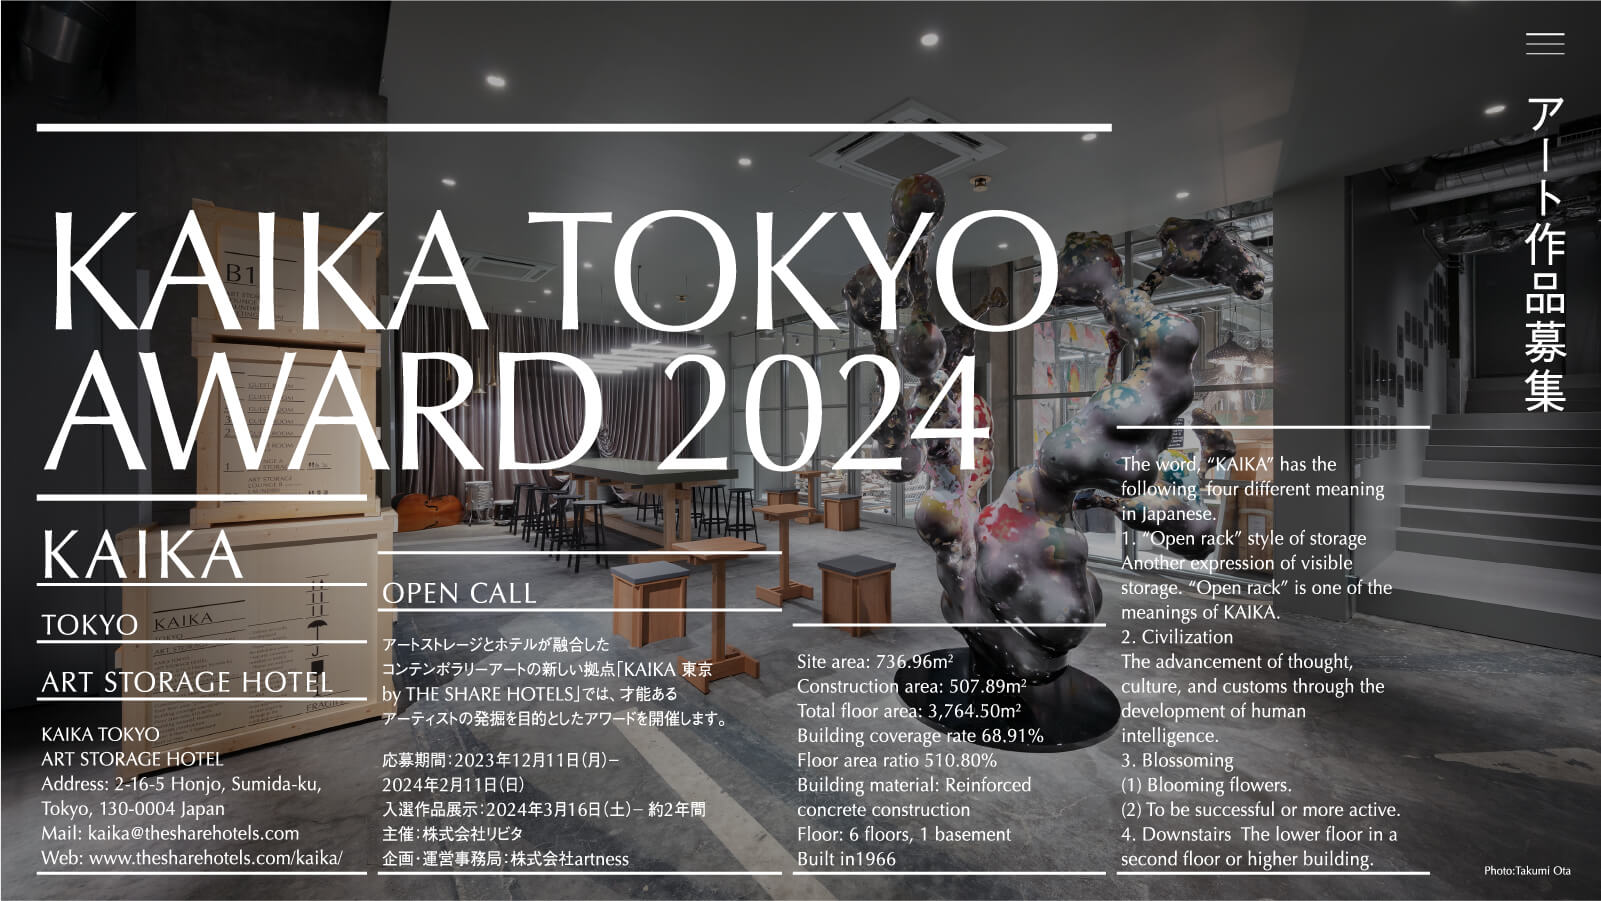 KAIKA TOKYO AWARD 2024【公式】 アート作品募集